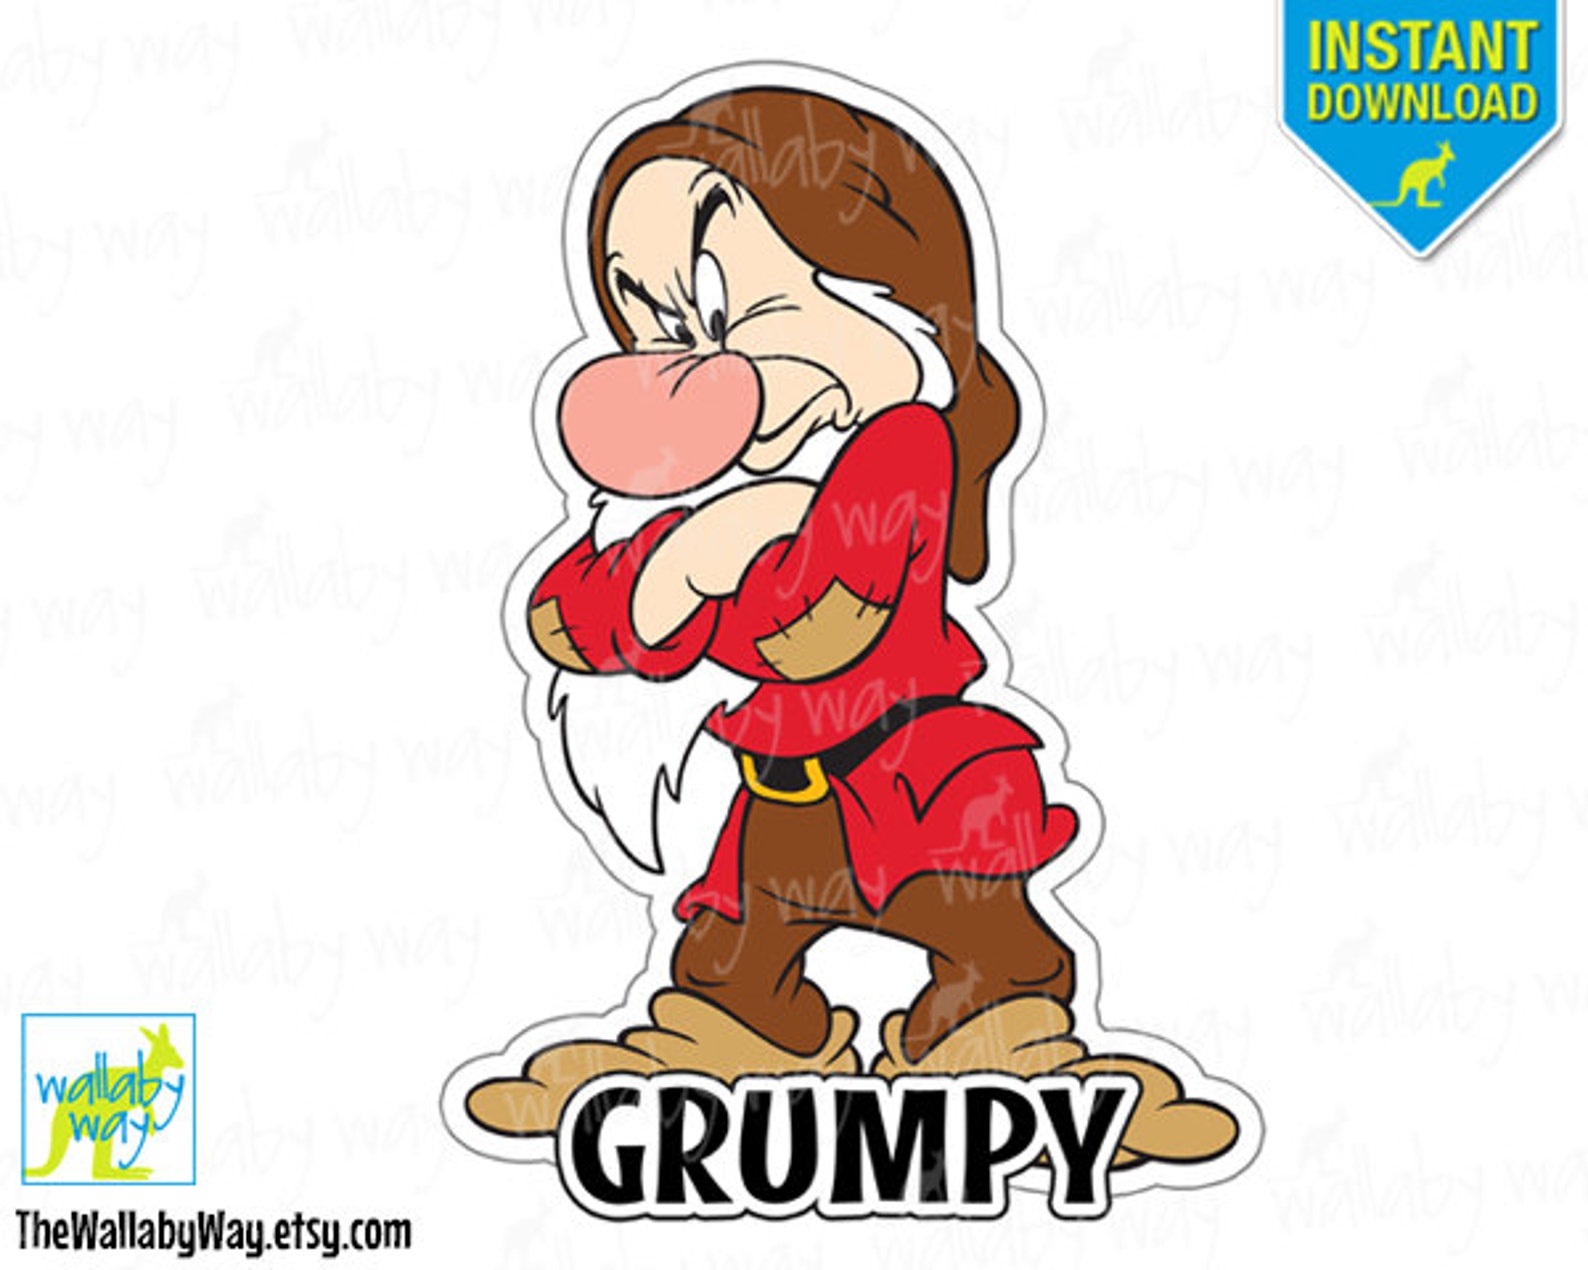 Grumpy Snow White & the 7 Dwarfs Printable Iron On Transfer or Use as C...